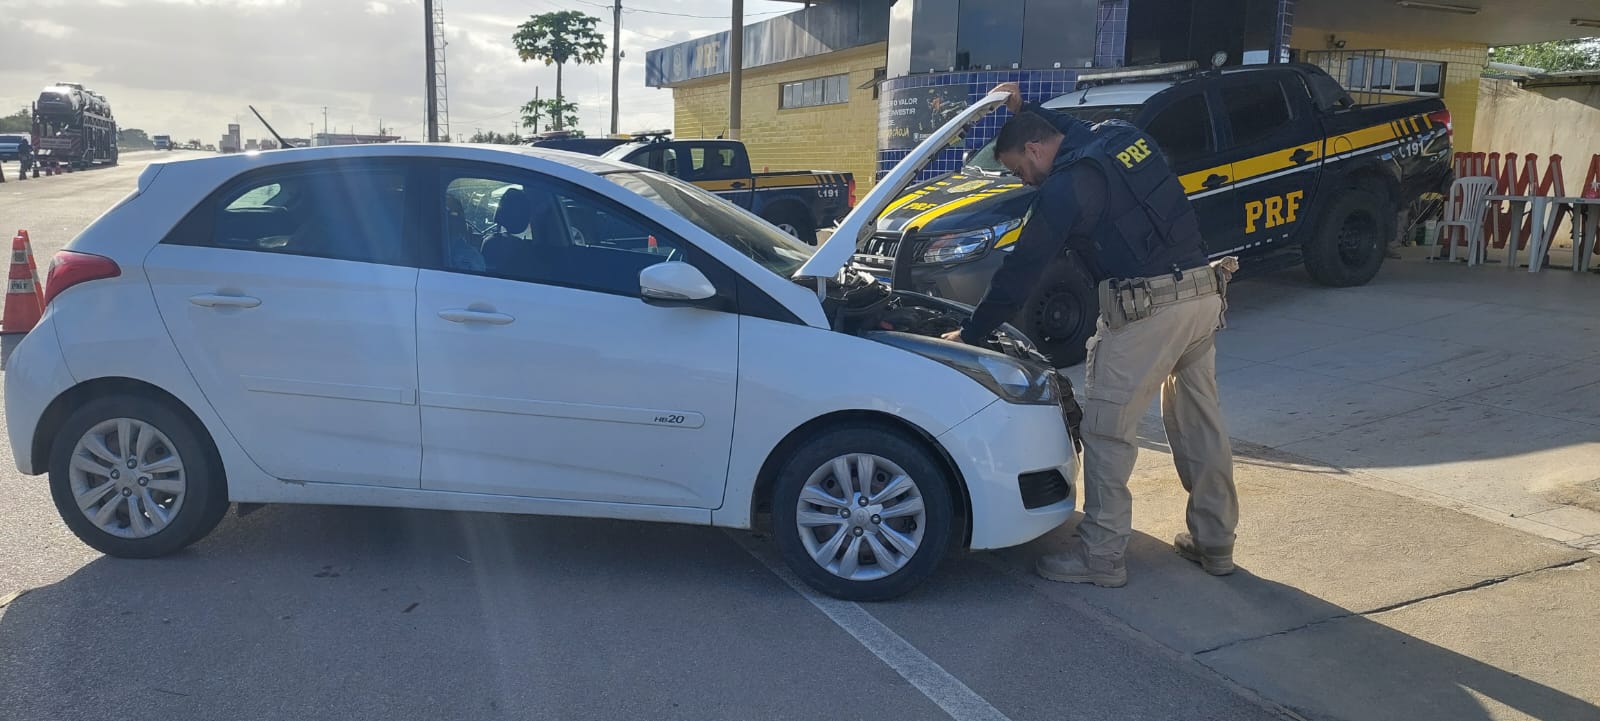 PRF recupera cinco veículos durante o fim de semana no Rio Grande do Norte  — Polícia Rodoviária Federal